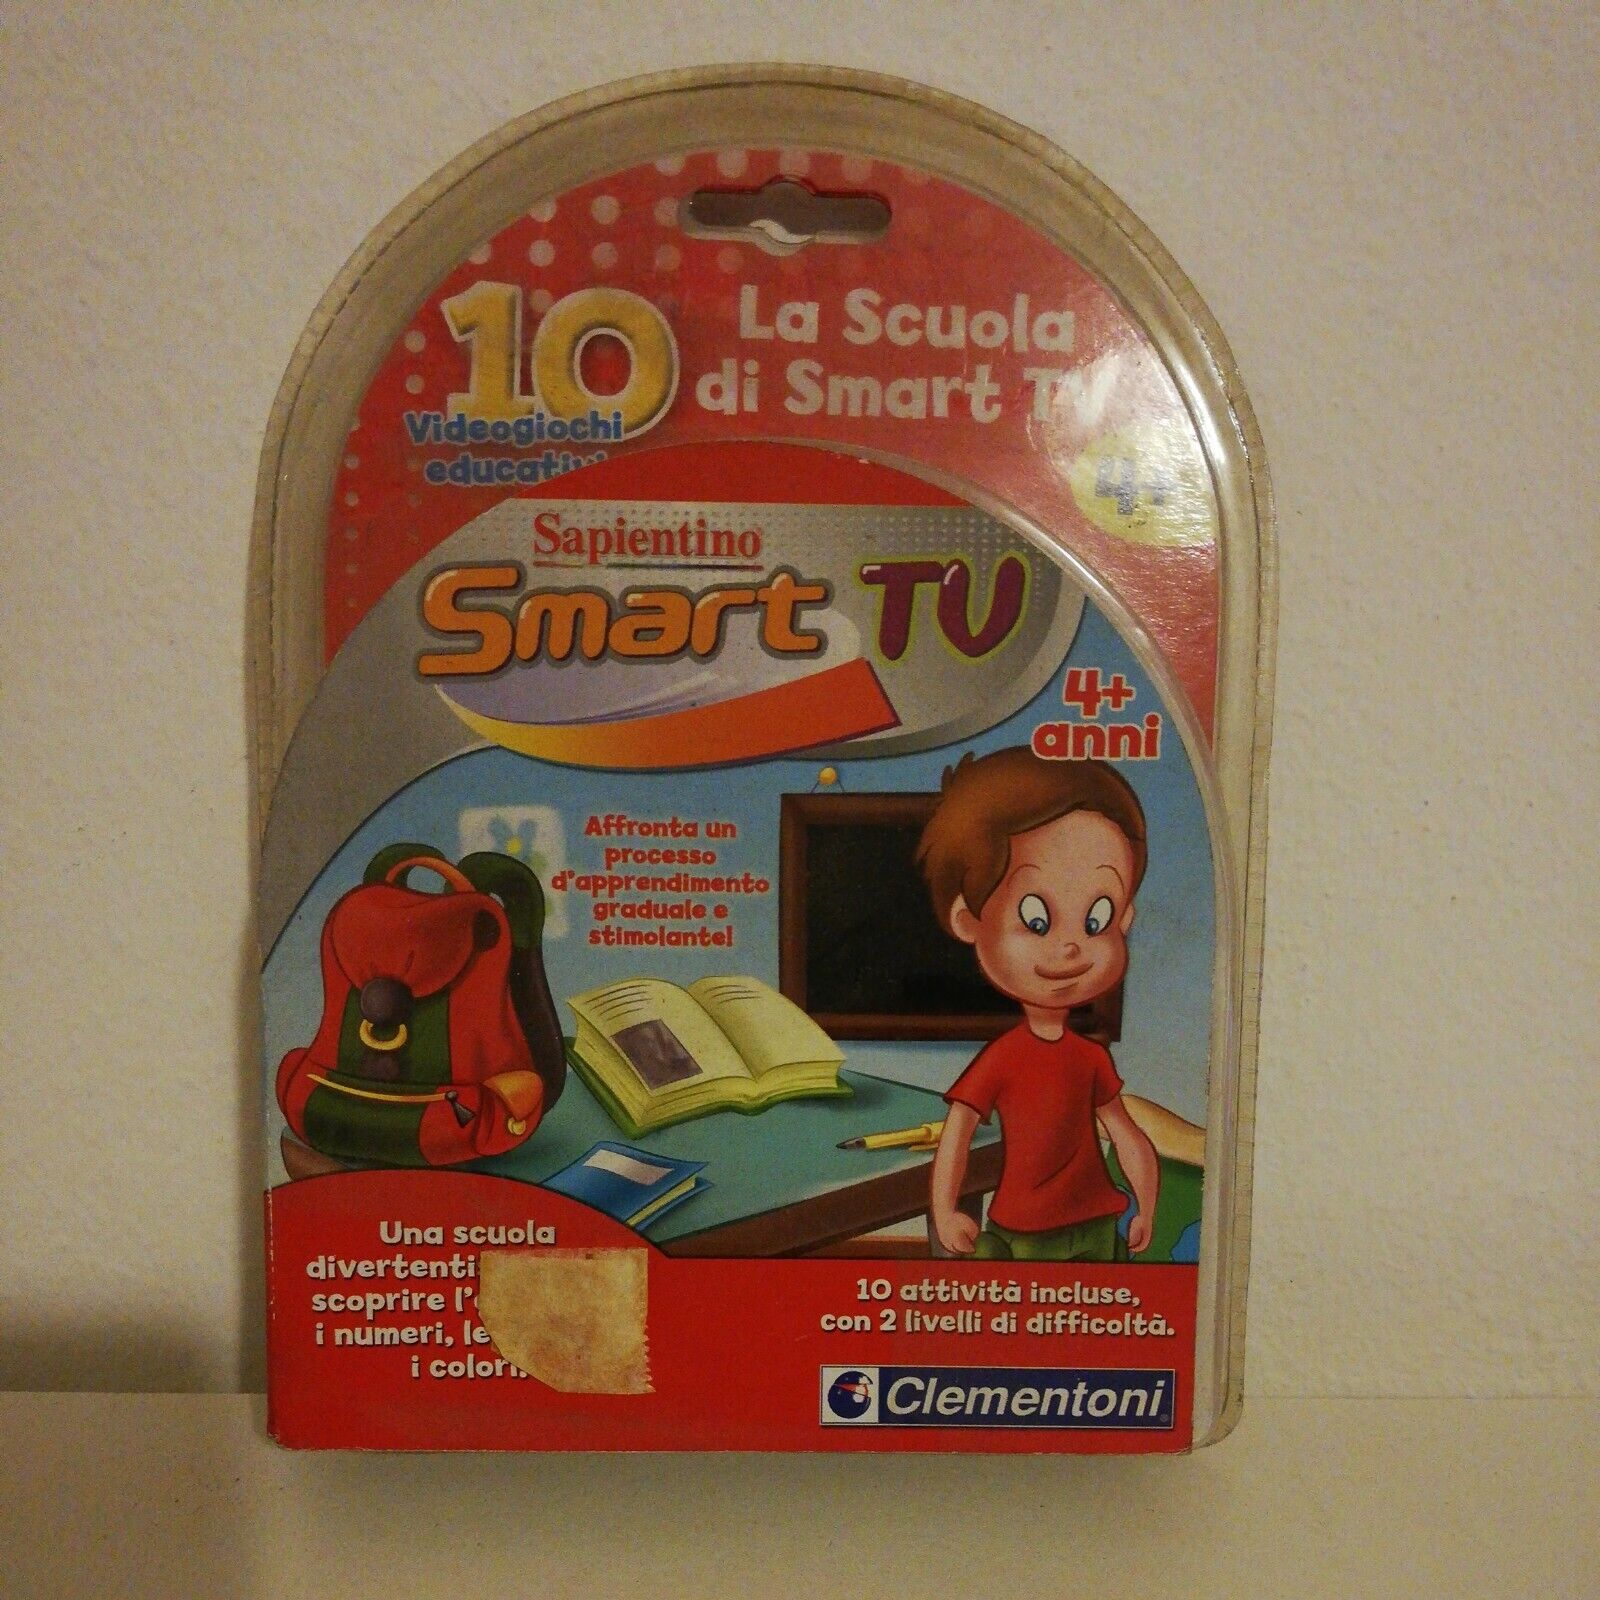 SAPIENTINO SMART TV CARTUCCIA LA SCUOLA DI SMART TV CLEMENTONI - DAI 4 ANNI.